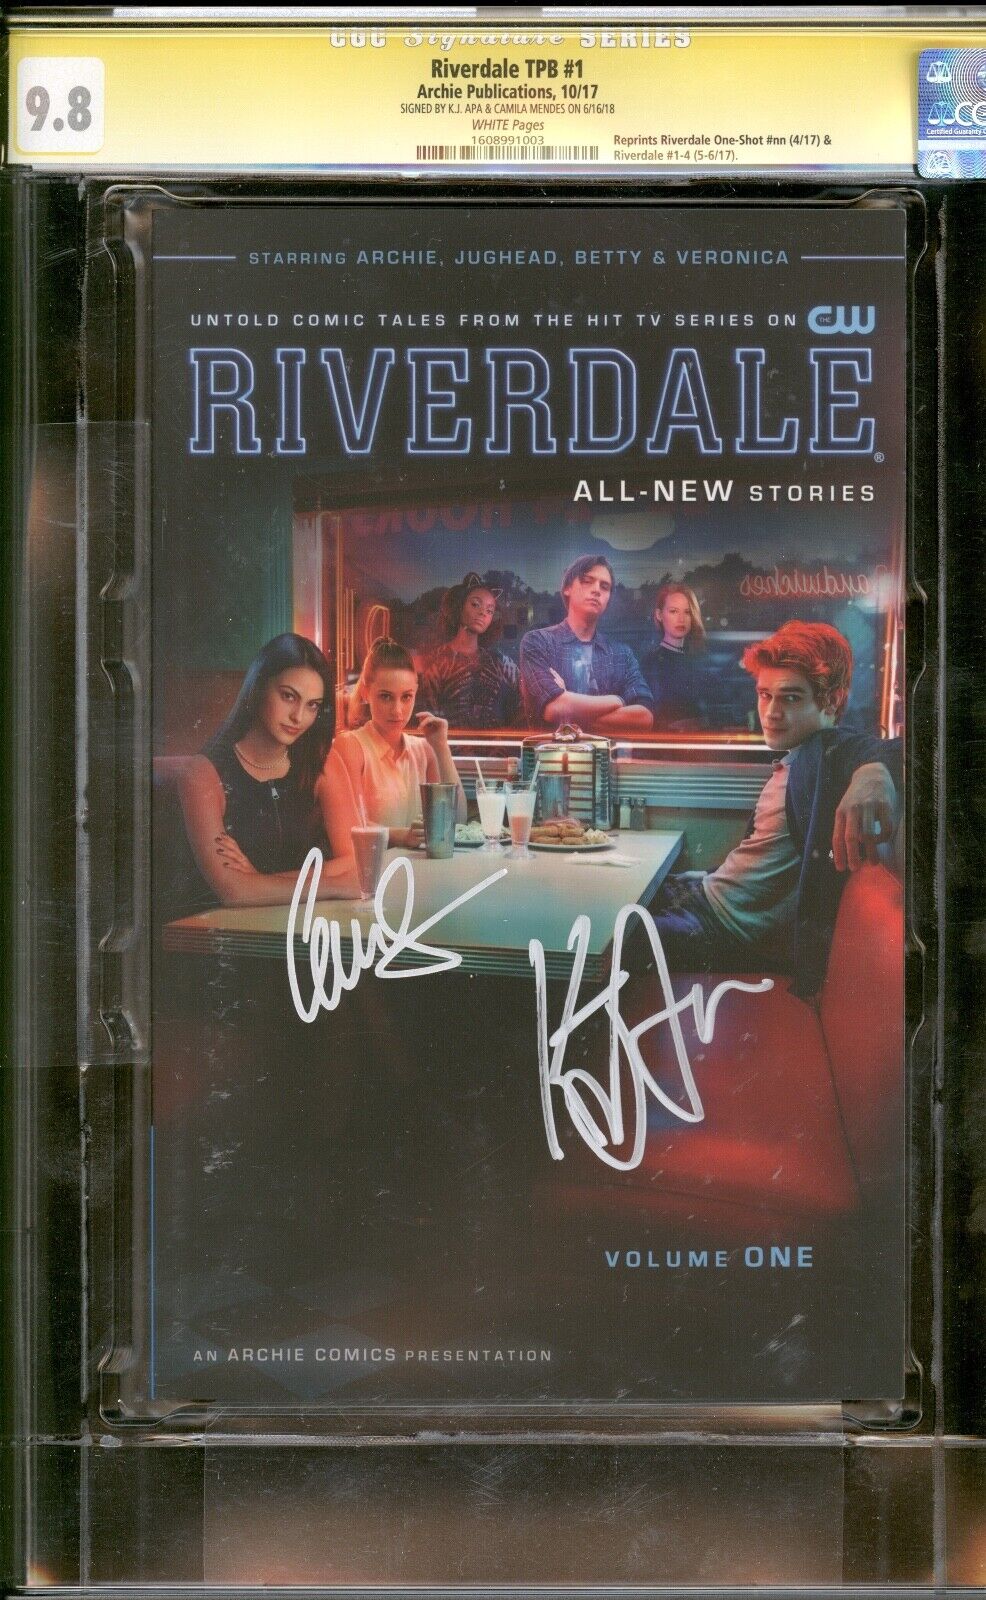 Riverdale TPB Photo CGC SS 9.8 Signed KJ Apa \